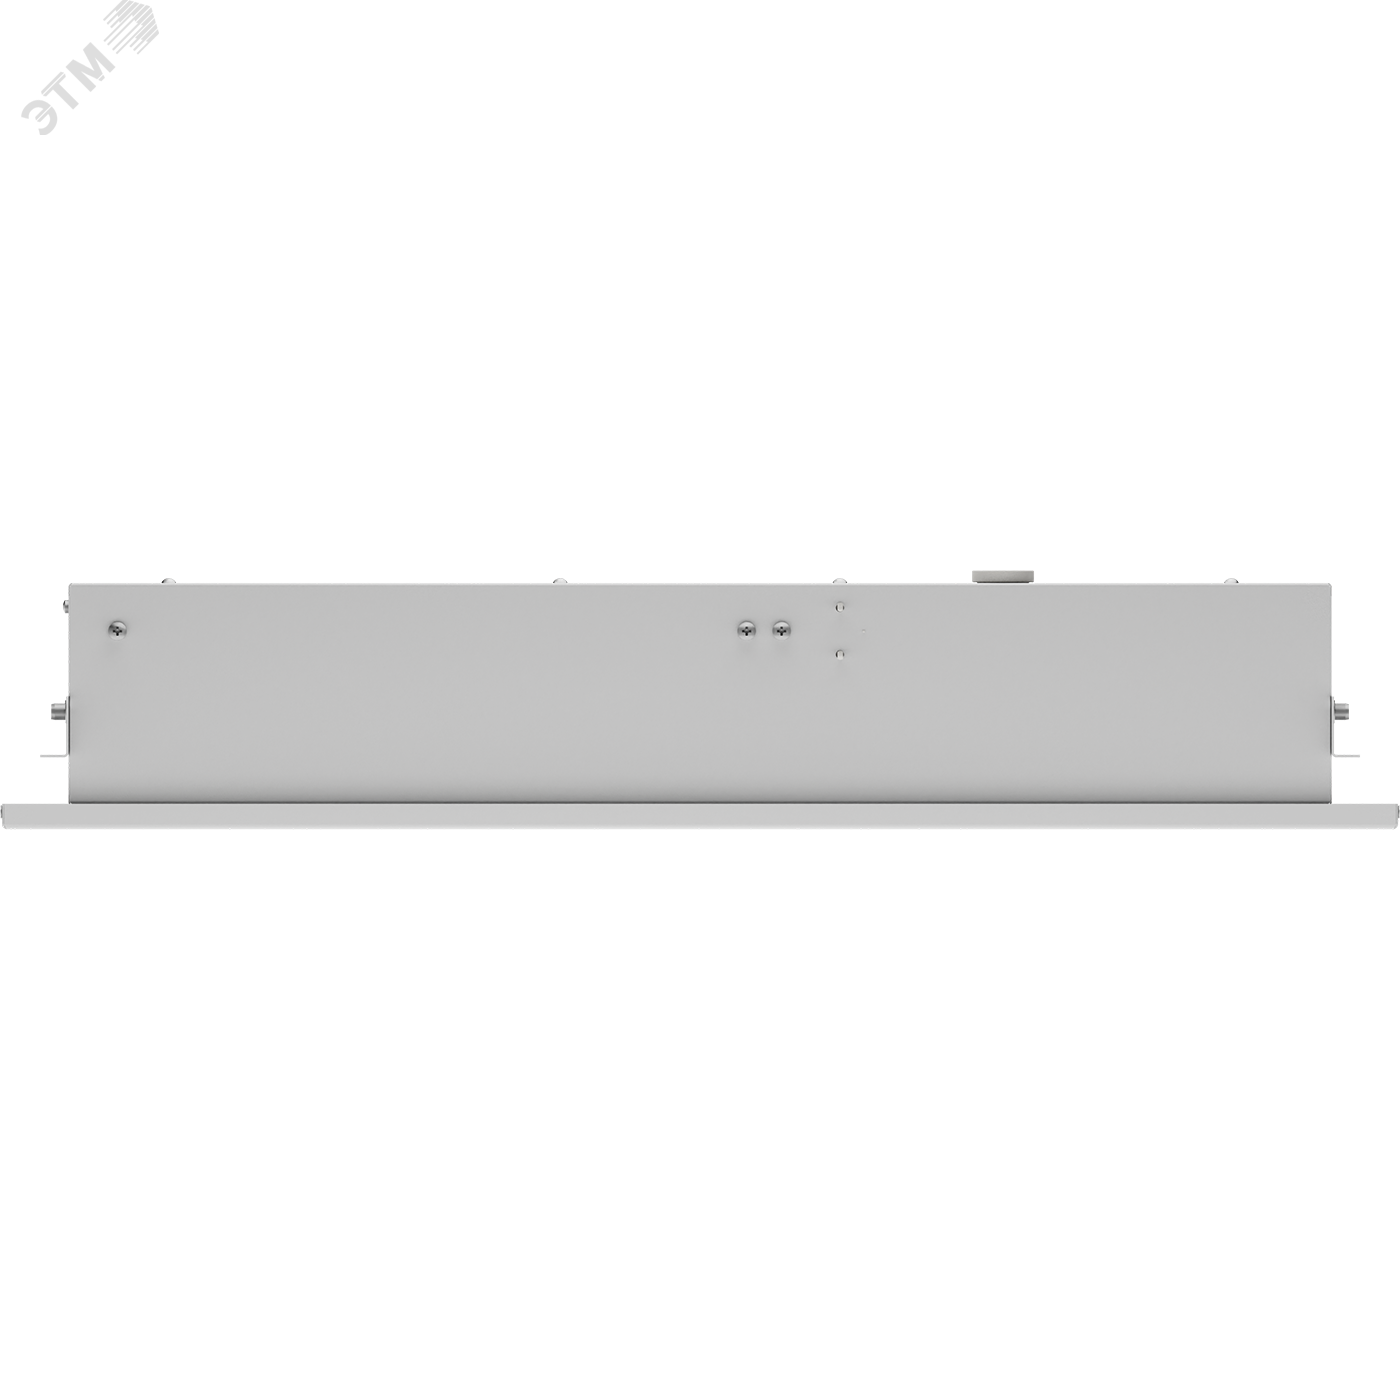 Светильник OWP/R 4x18 ES1 IP54, встраиваемый опаловый аварийный блок 1373000150 Световые Технологии - превью 7